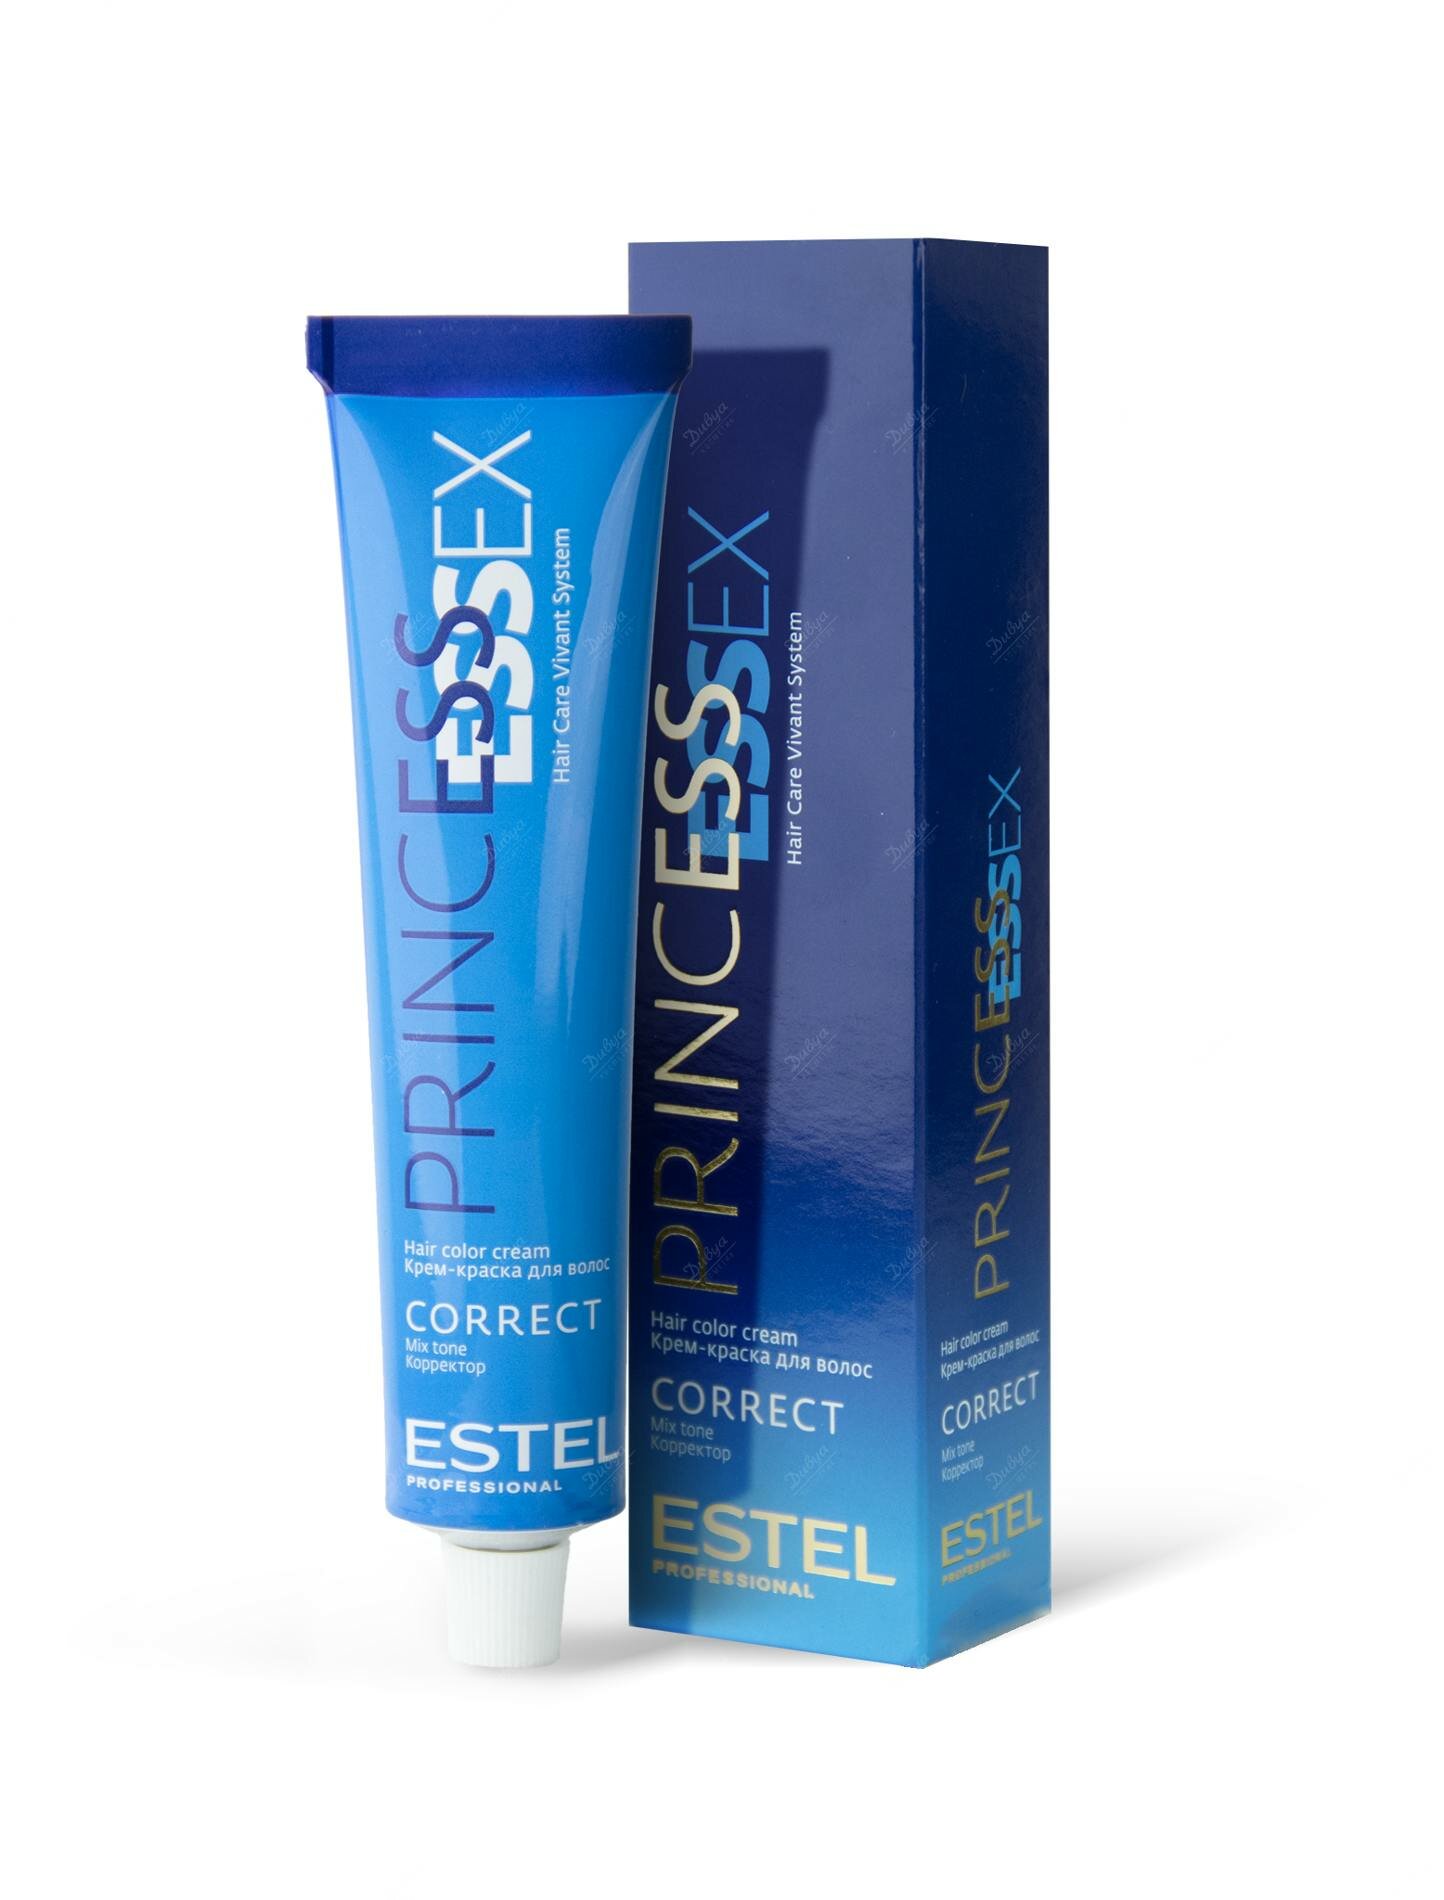 ESTEL Princess Essex Corrector цветная крем-краска для волос, 0/55 красный, 60 мл